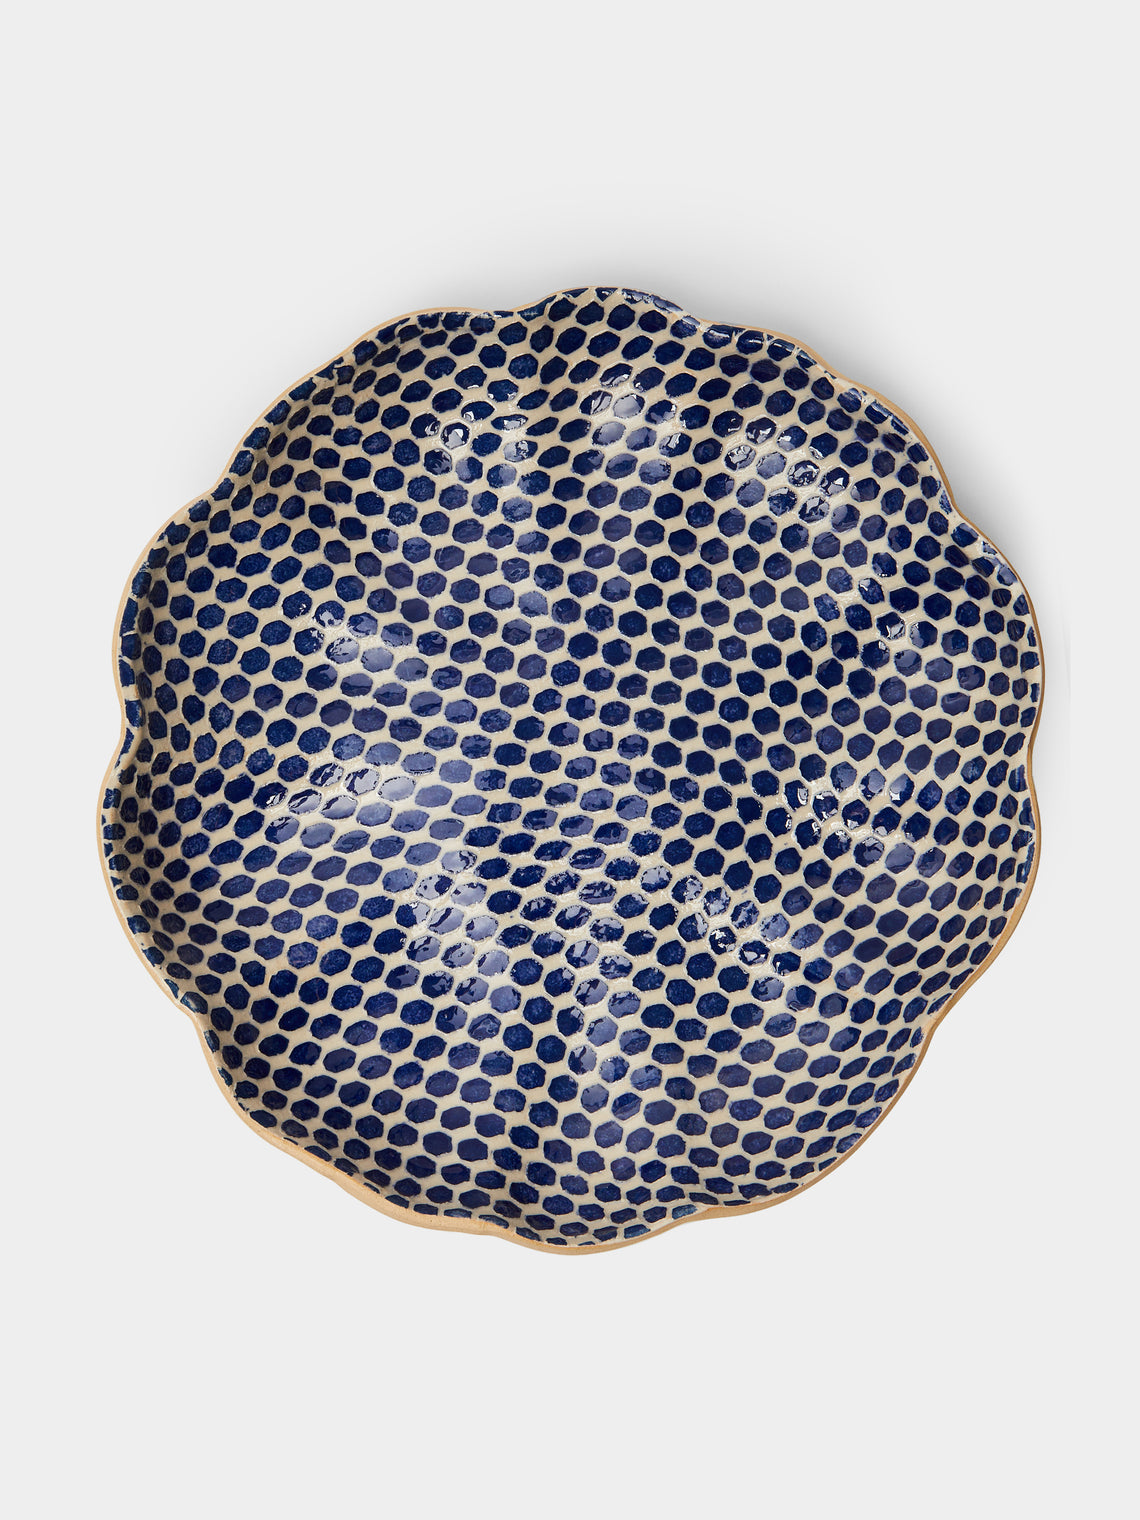 Terrafirma Ceramics - Hand-Printed Ceramic Large Scalloped Bowl - Blue - ABASK